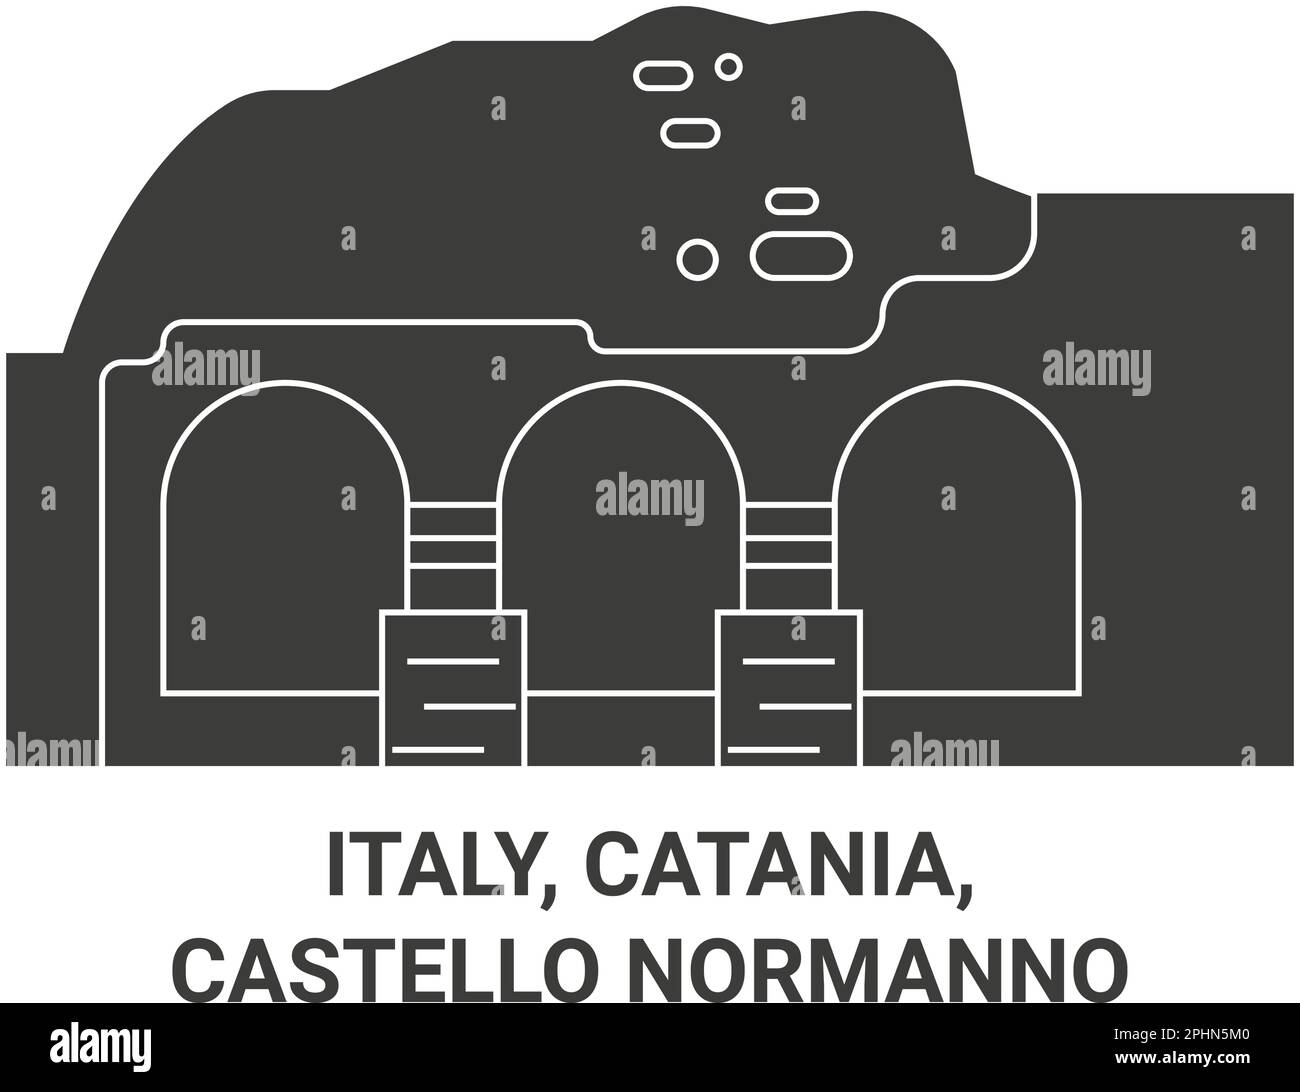 Italien, Catania, Castello Normanno Reise-Wahrzeichen-Vektordarstellung Stock Vektor